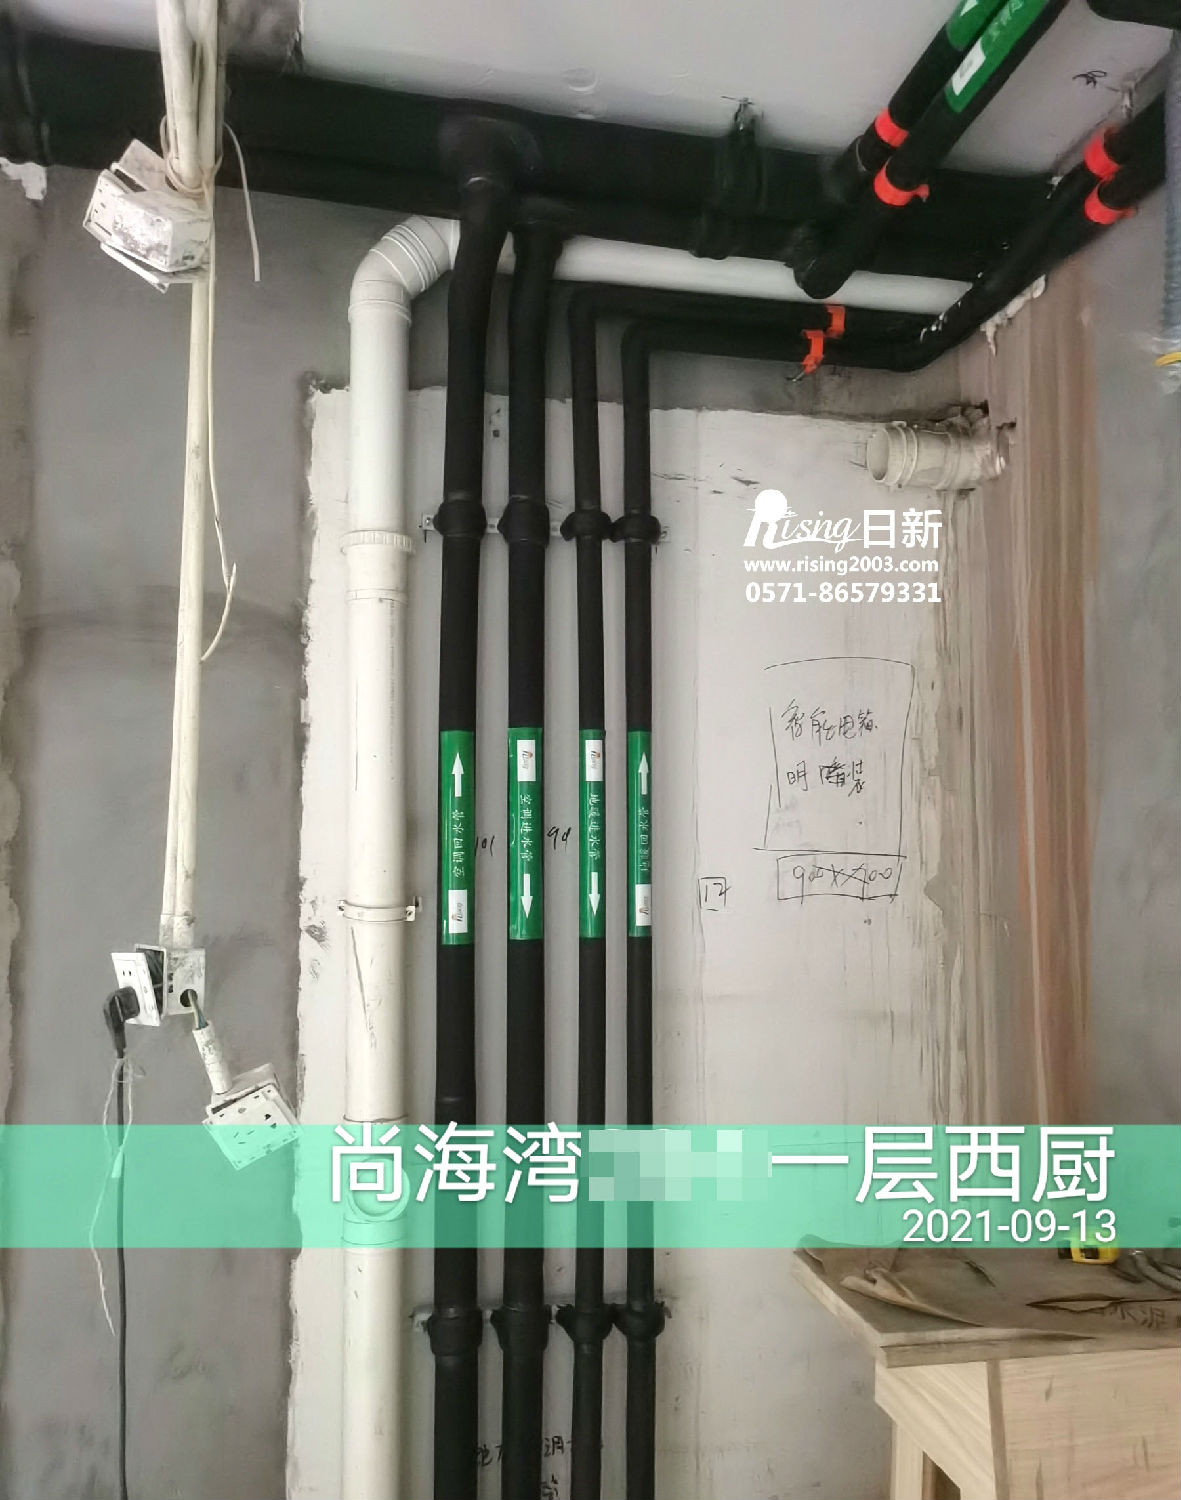 光明尚海湾别墅风冷热泵系统A项目空调阶段【日新环境】